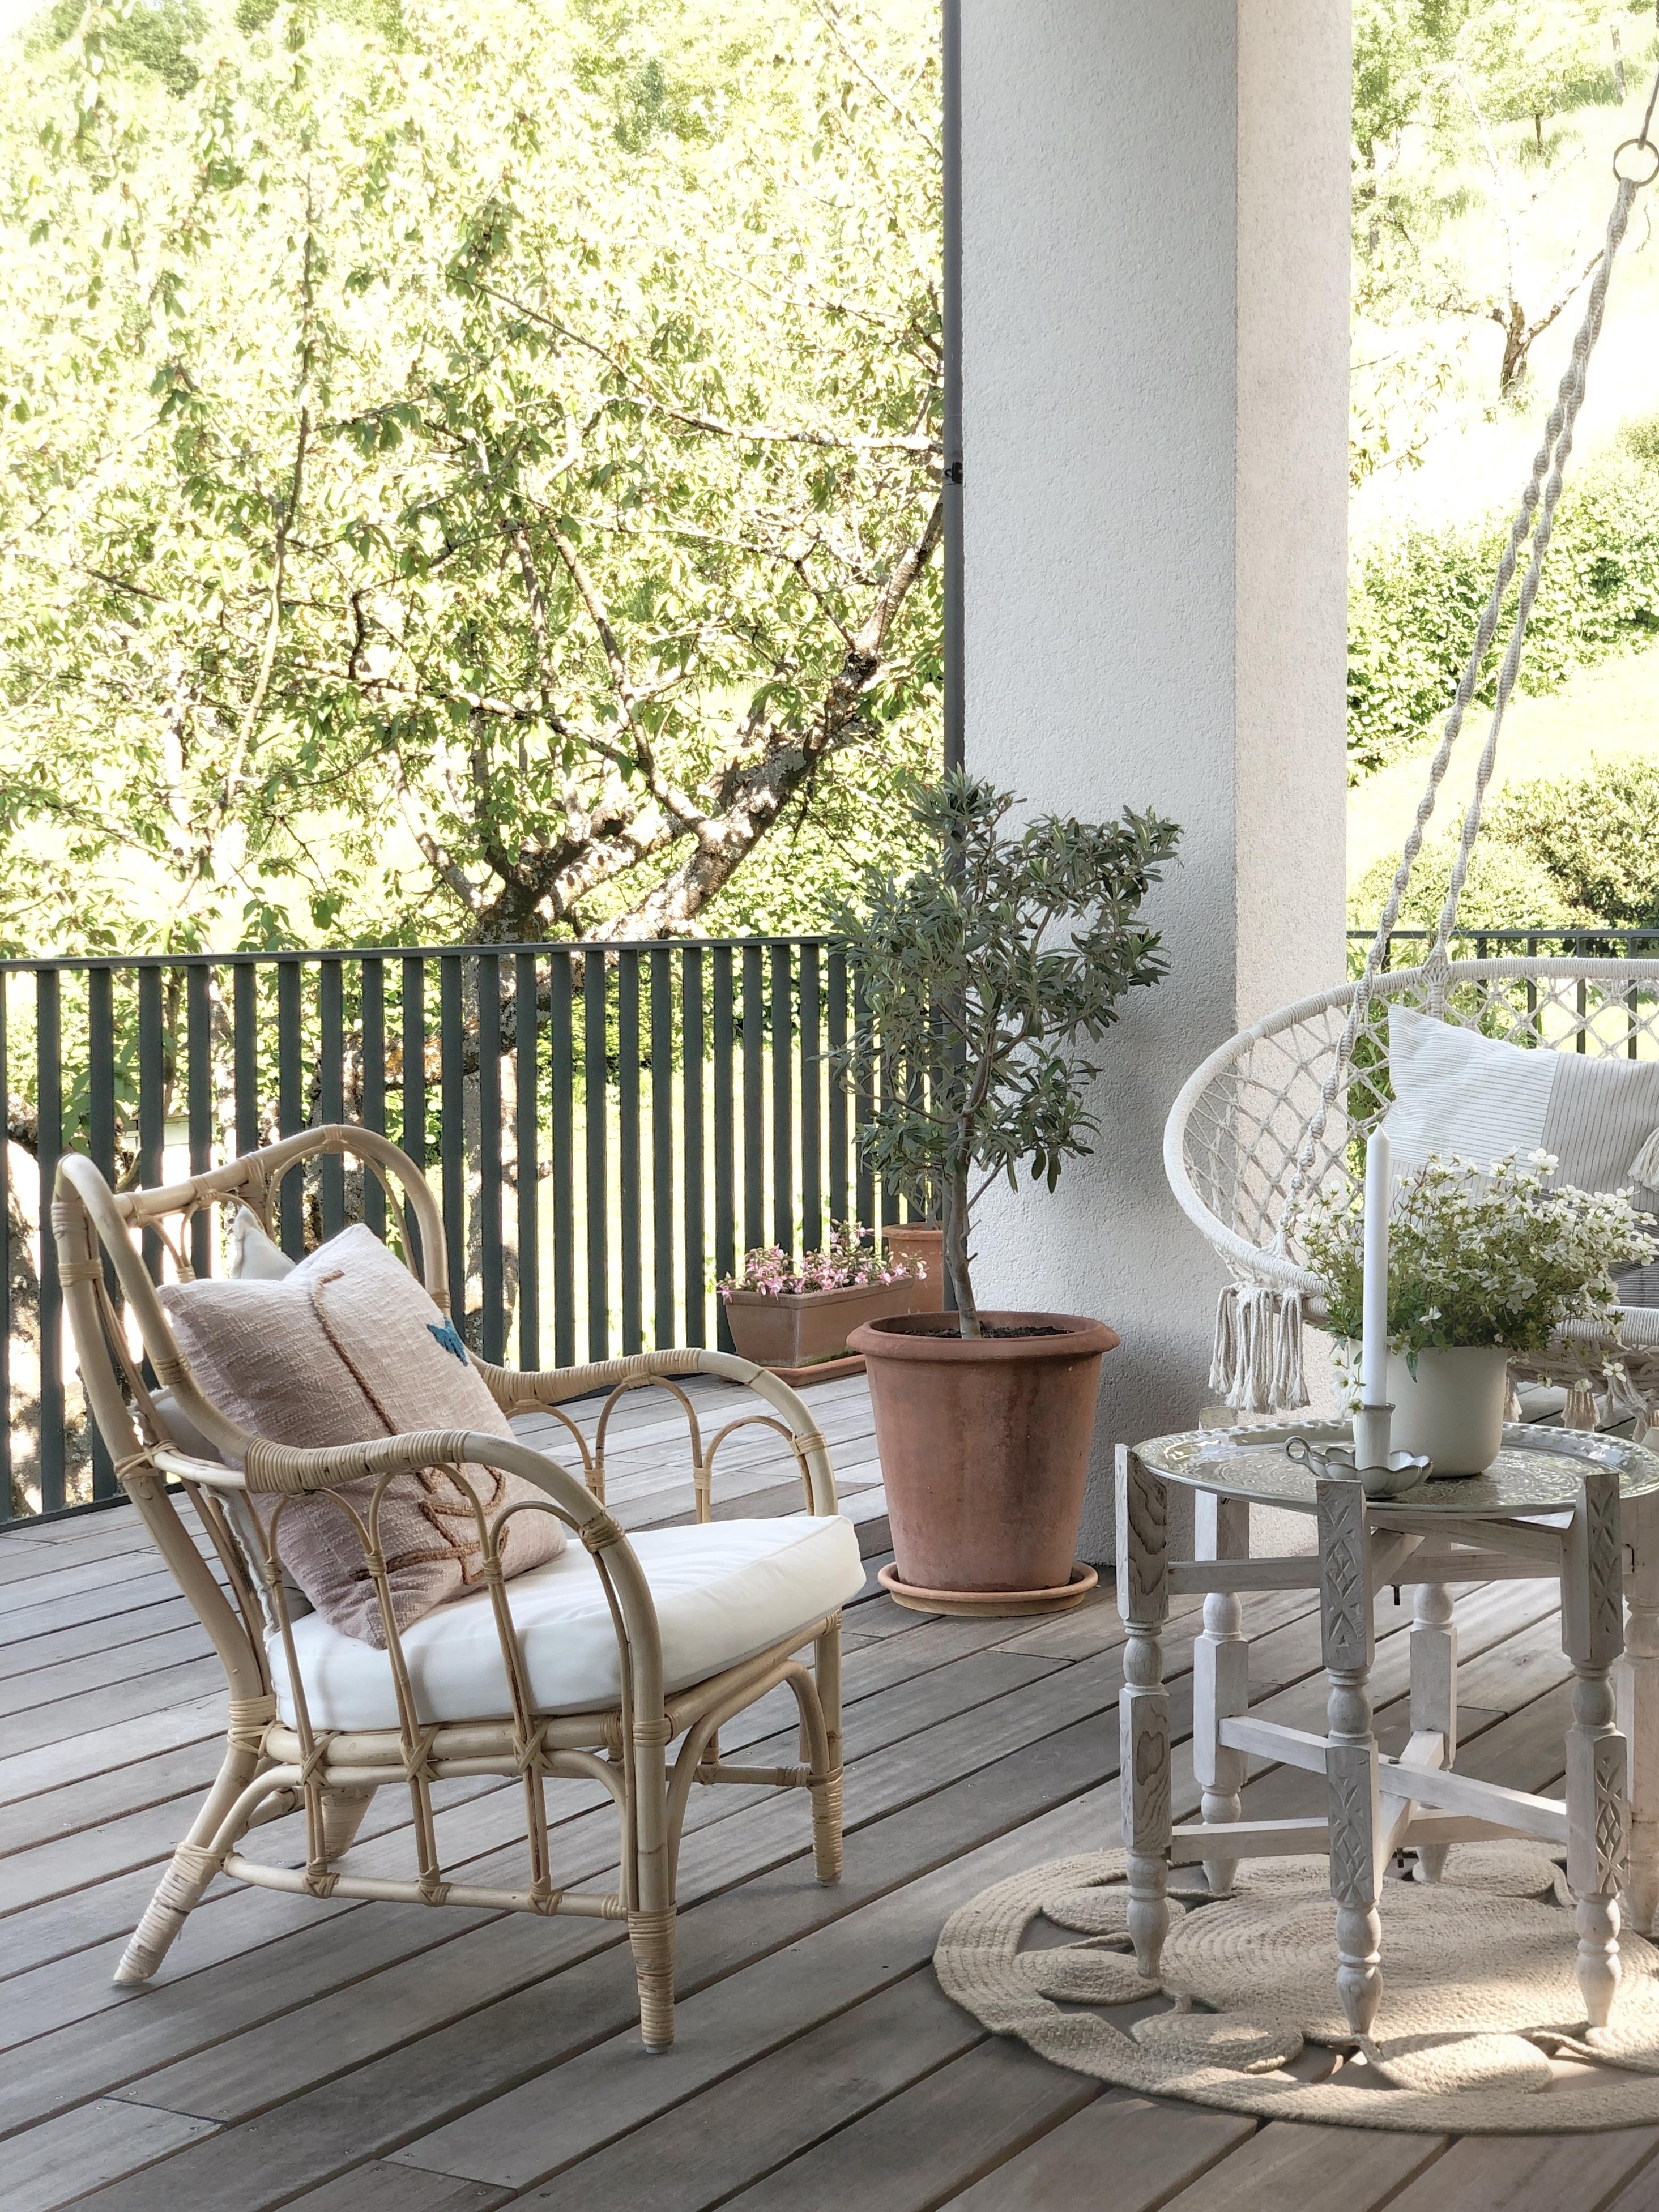 Unser Gartenzimmer wird immer grüner! #terrace#terrasse#holzterrasse#outdoor#garten#nordicstyle#designlover